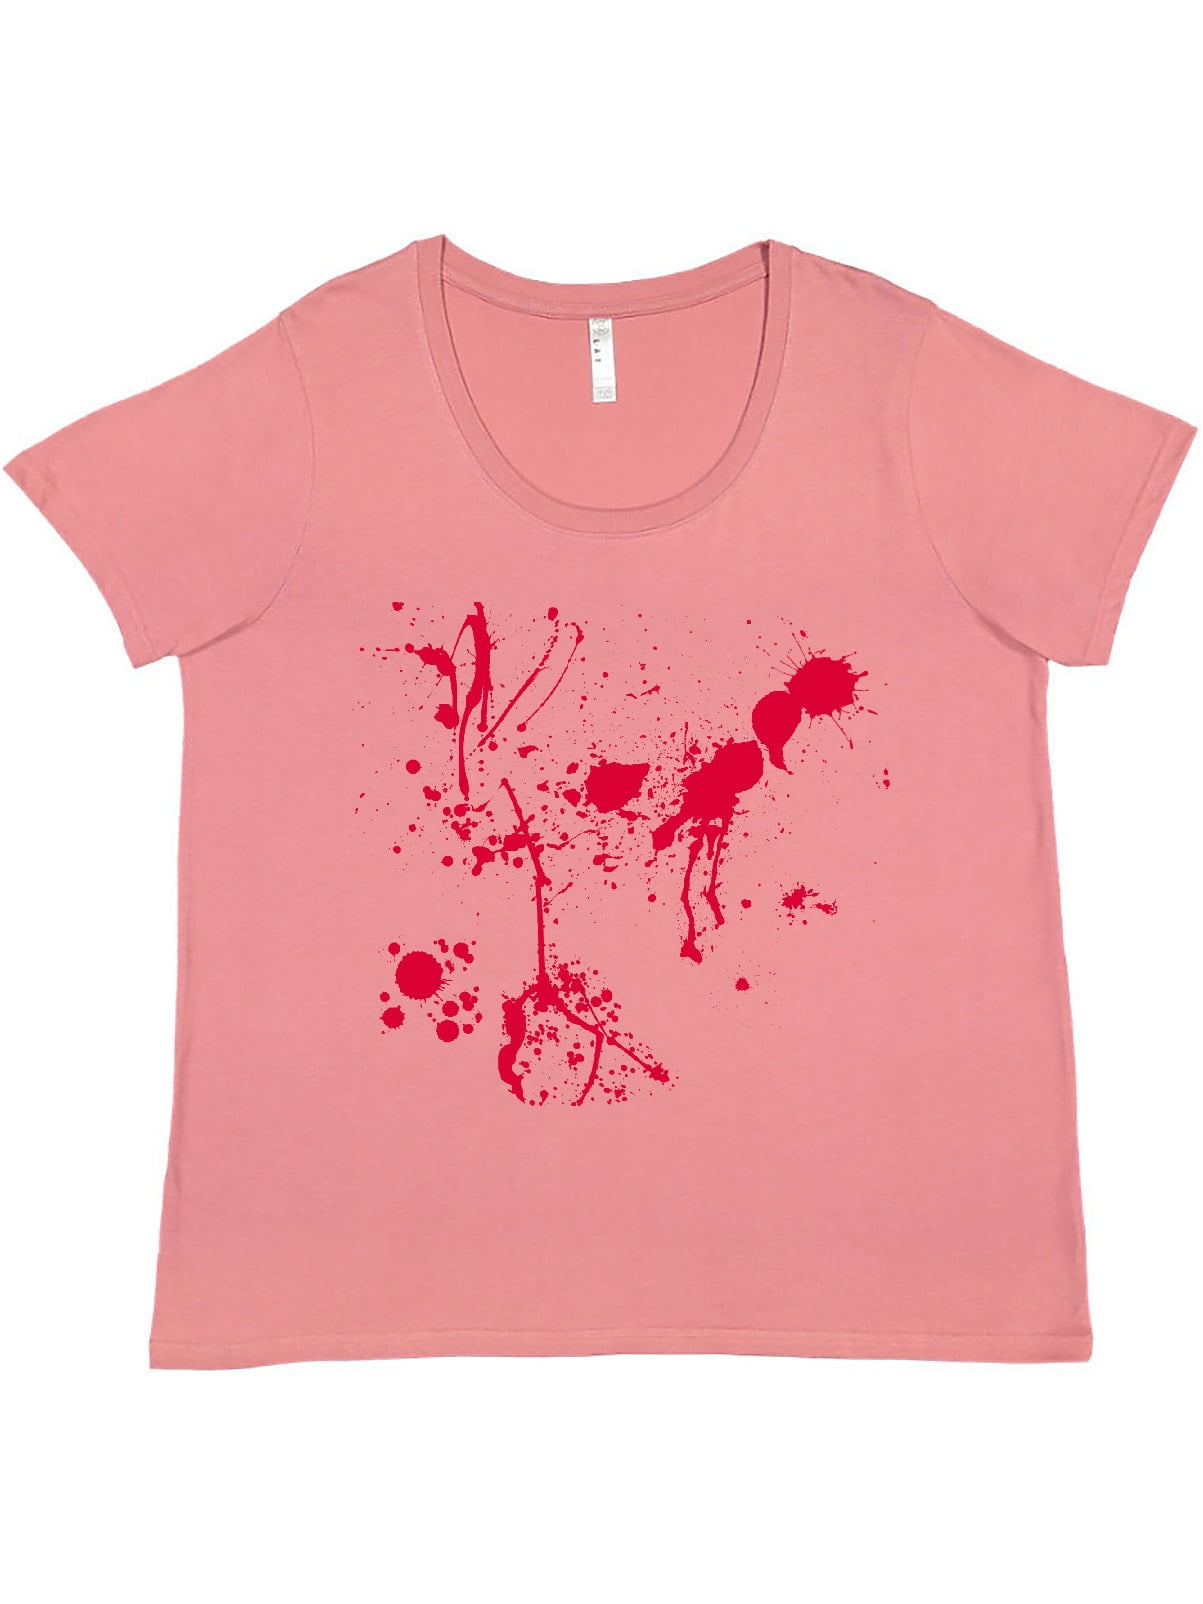 Ossizial-Blood splatter t-shirt s-xxxl 